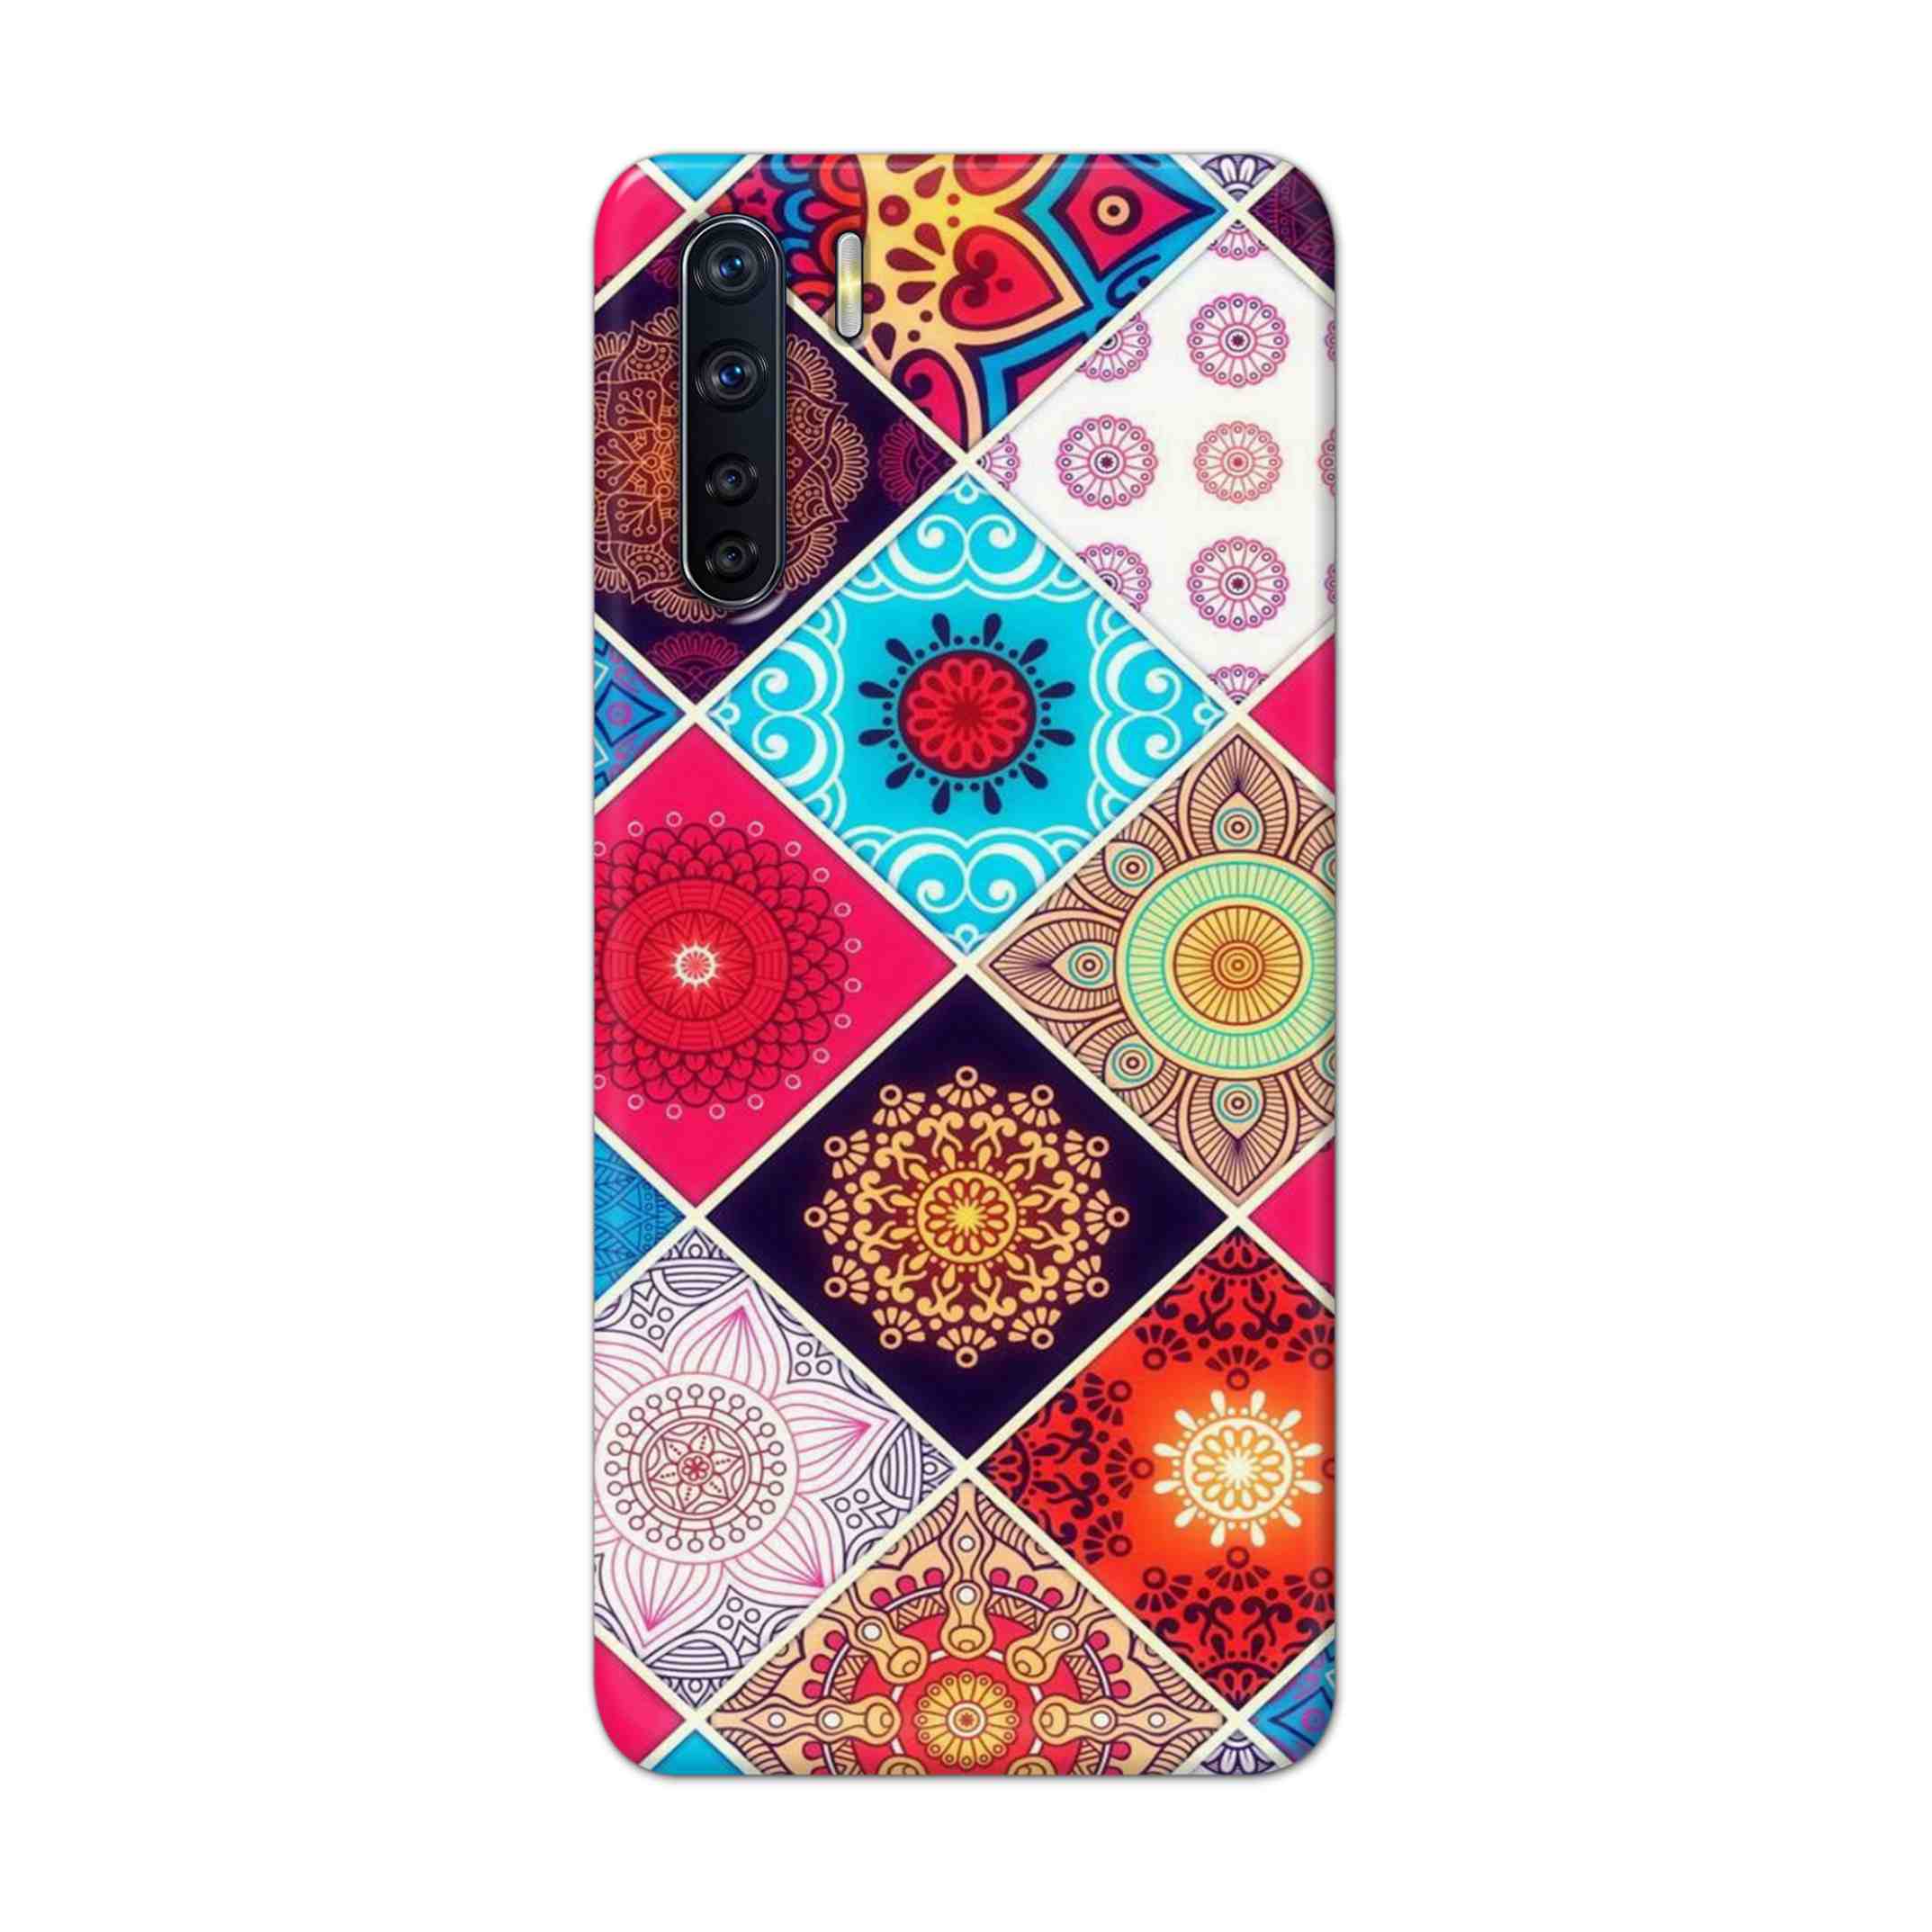 Buy Rainbow Mandala Hard Back Mobile Phone Case Cover For OPPO F15 Online